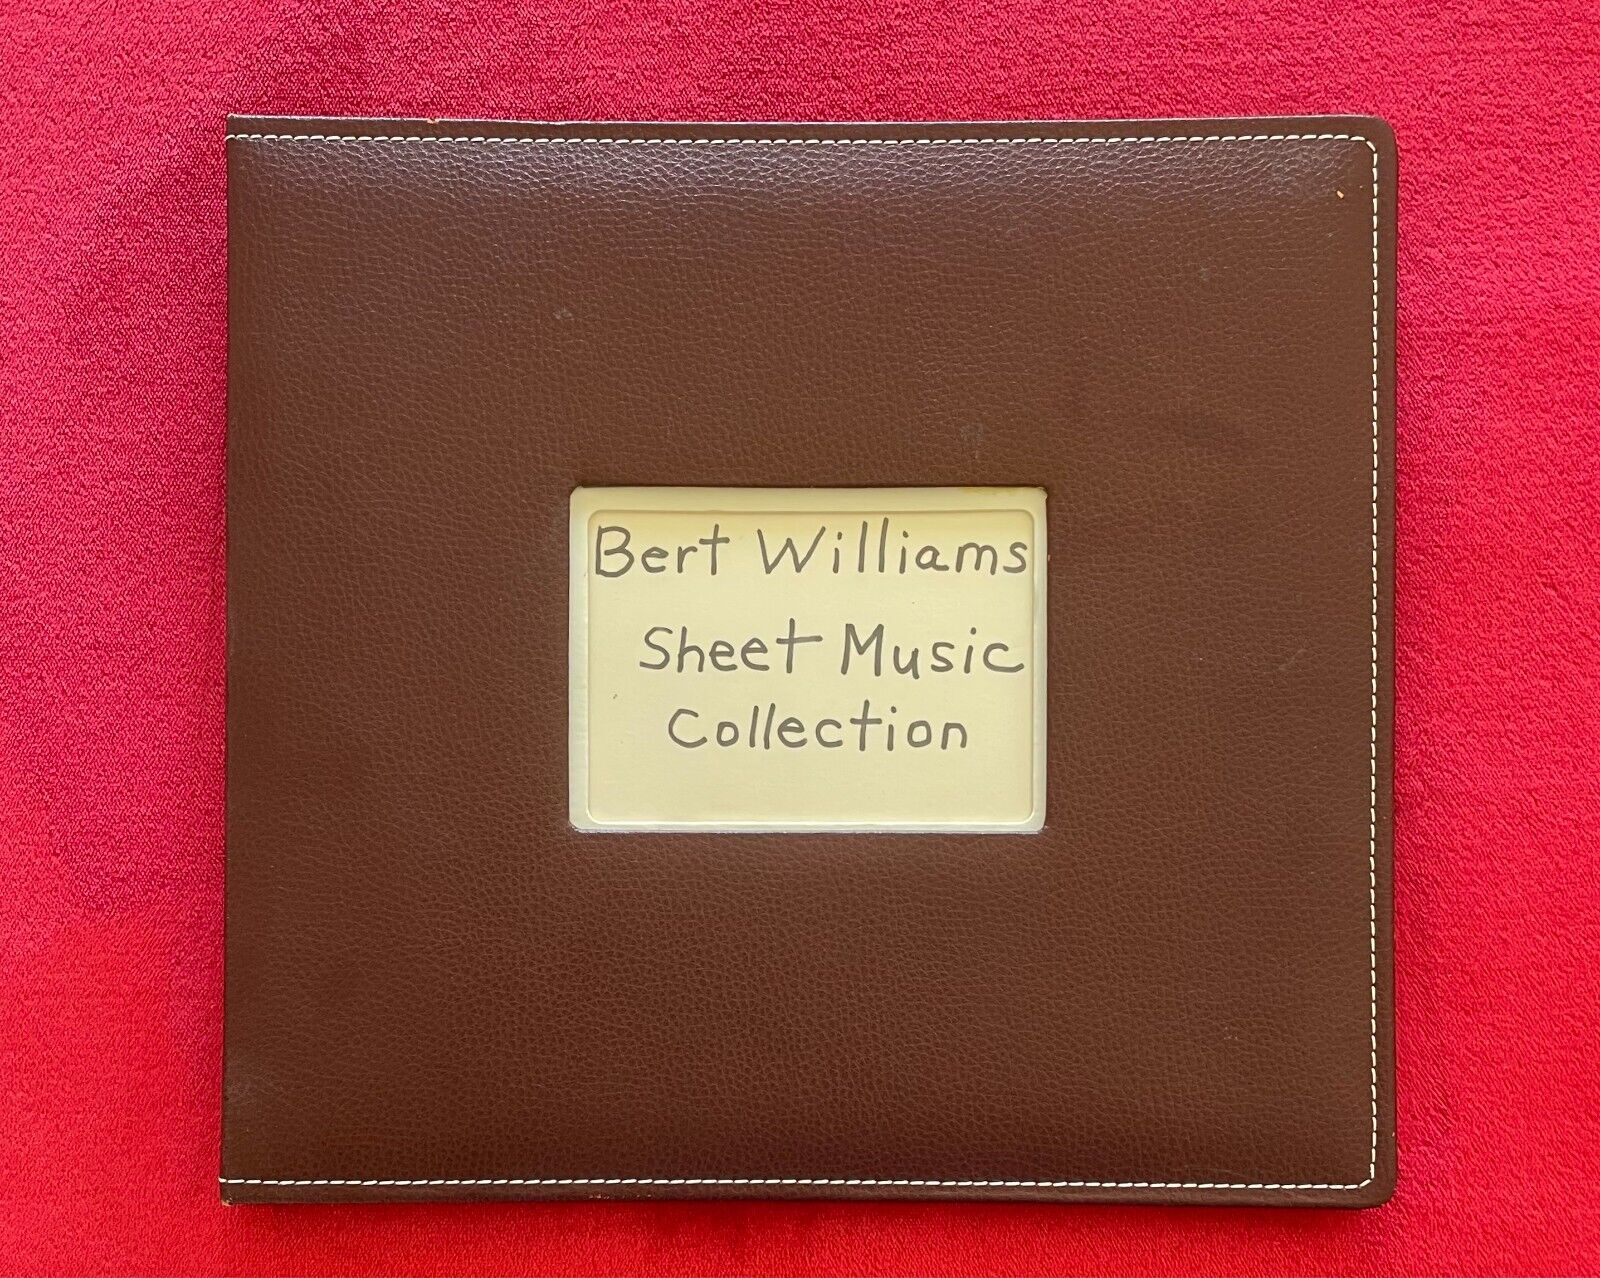 BERT A. WILLIAMS VAUDEVILLE COMEDIAN, COMPOSER SINGER - SHEET MUSIC COLLECTION